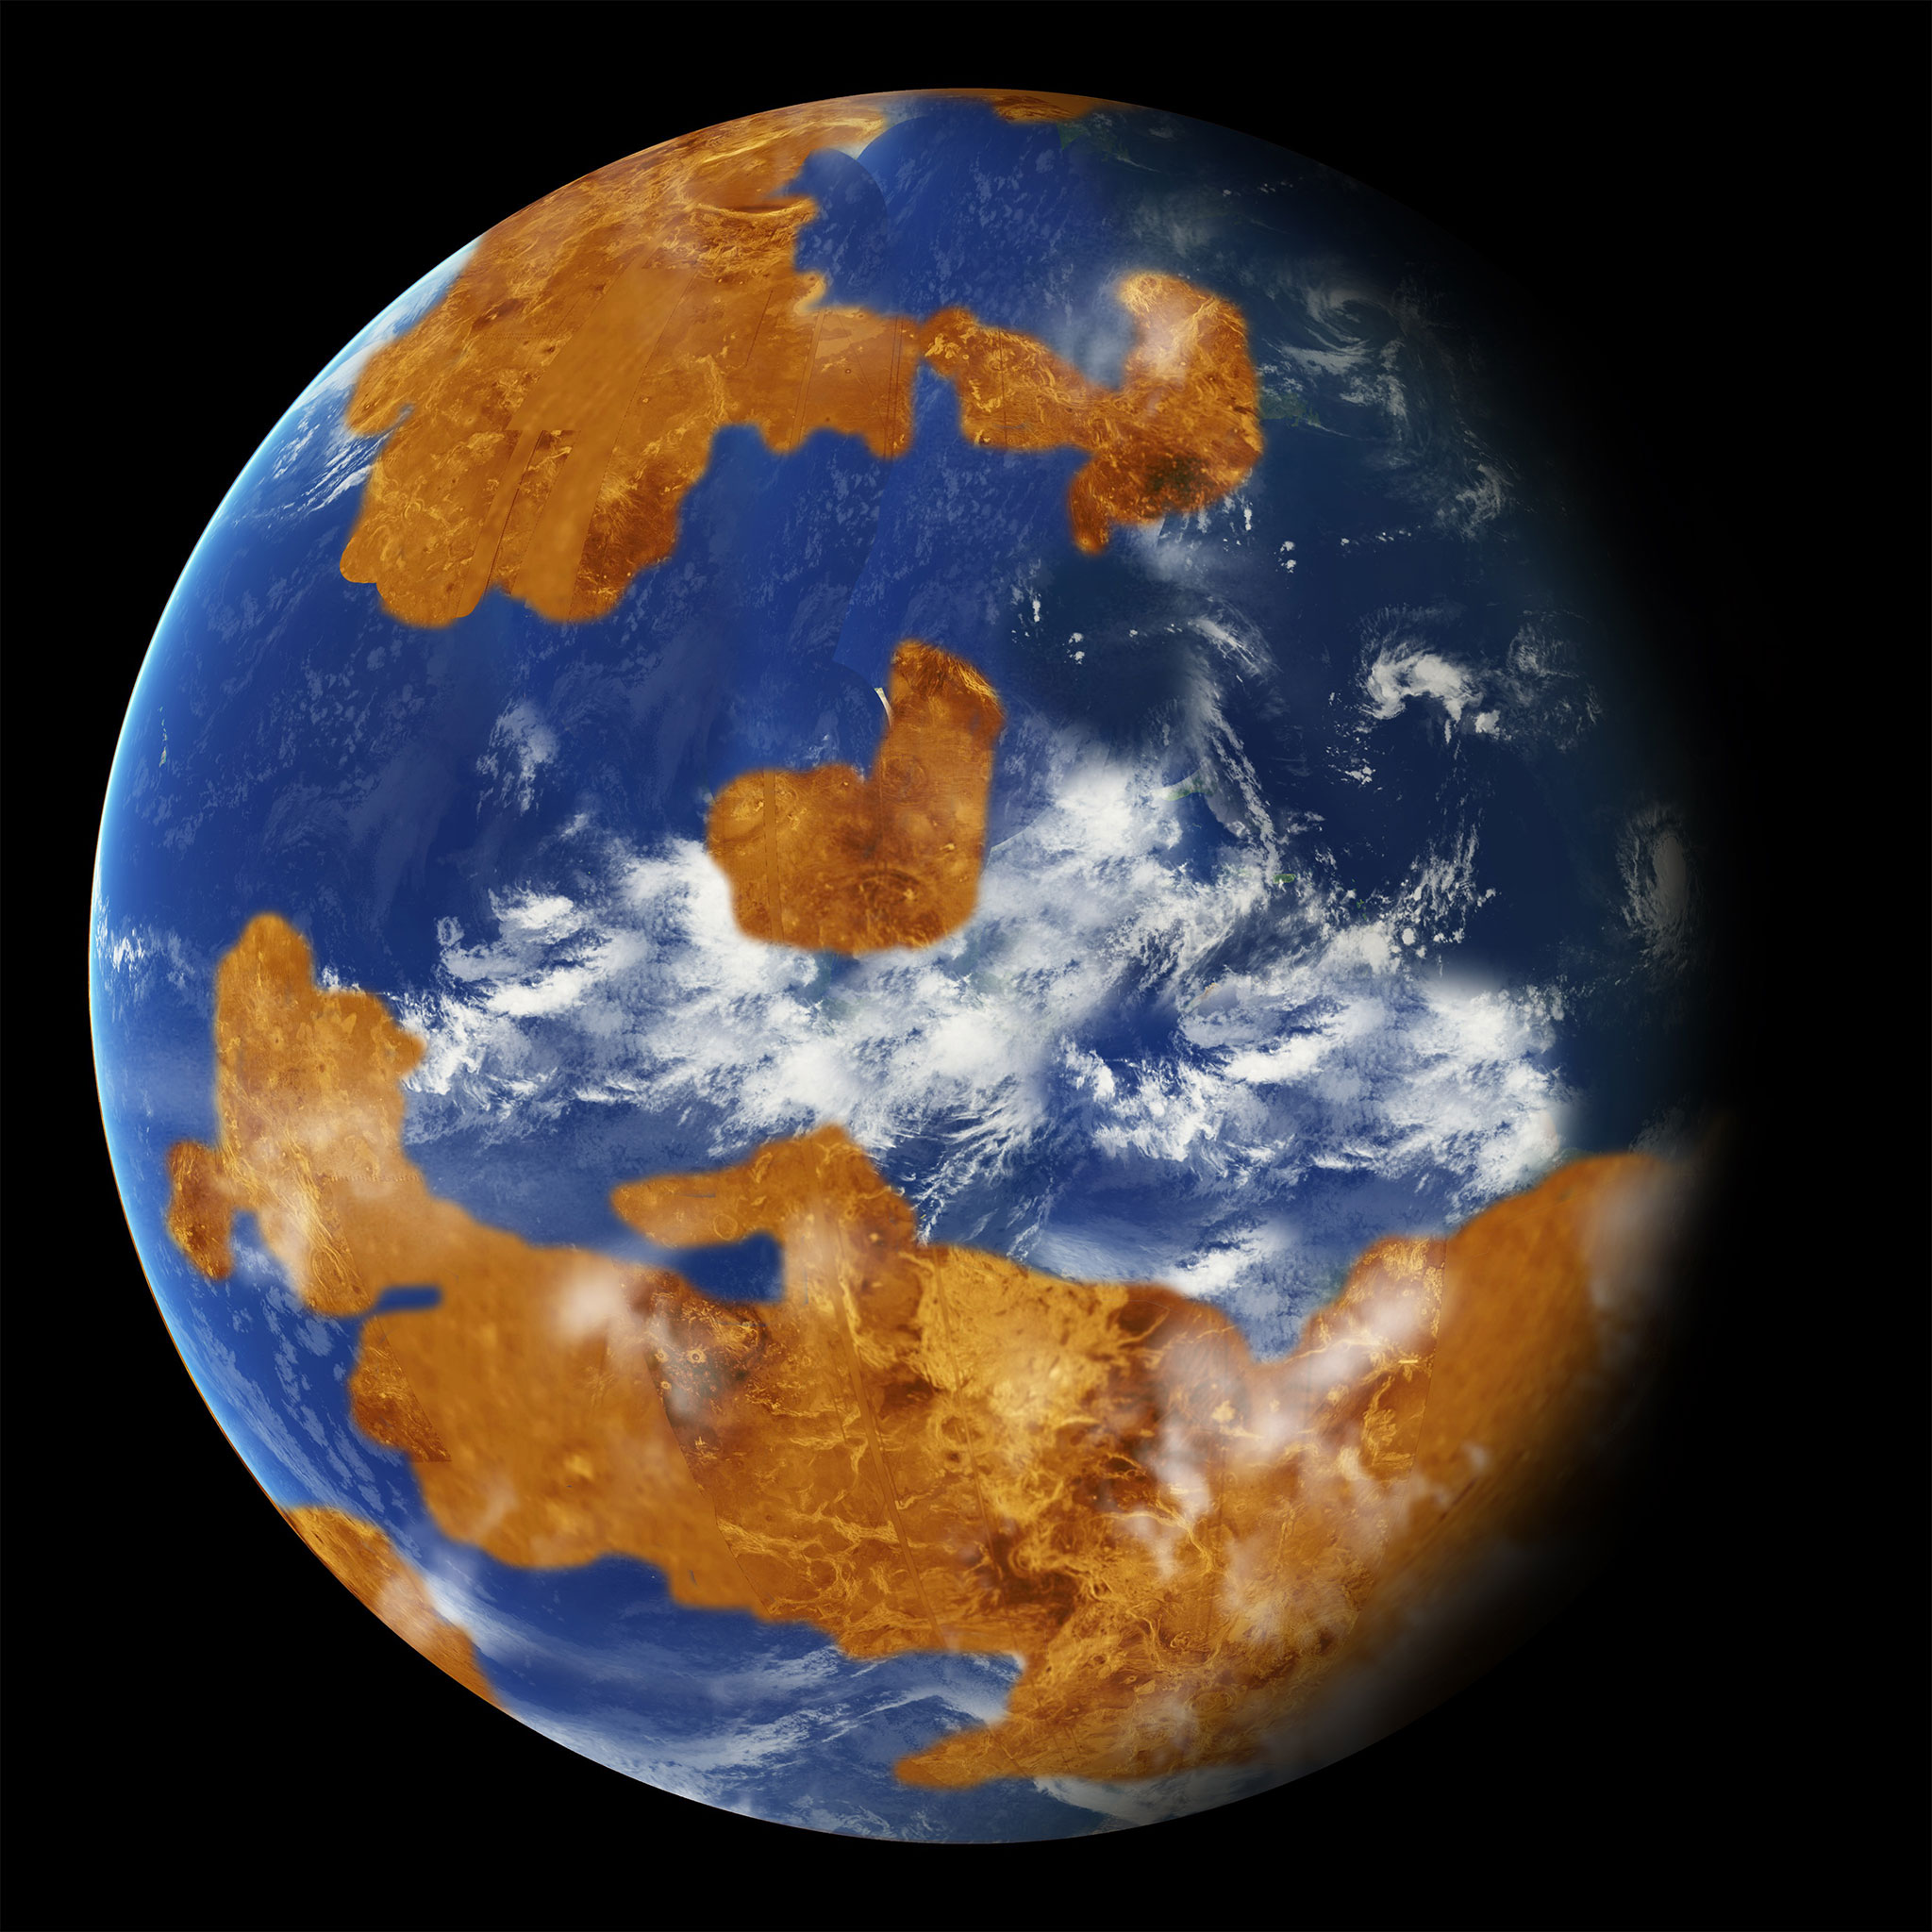 Venüs'ün bilgisayar modelleri tarafından öne sürülen 2 milyar yıl önceki hali. [NASA]